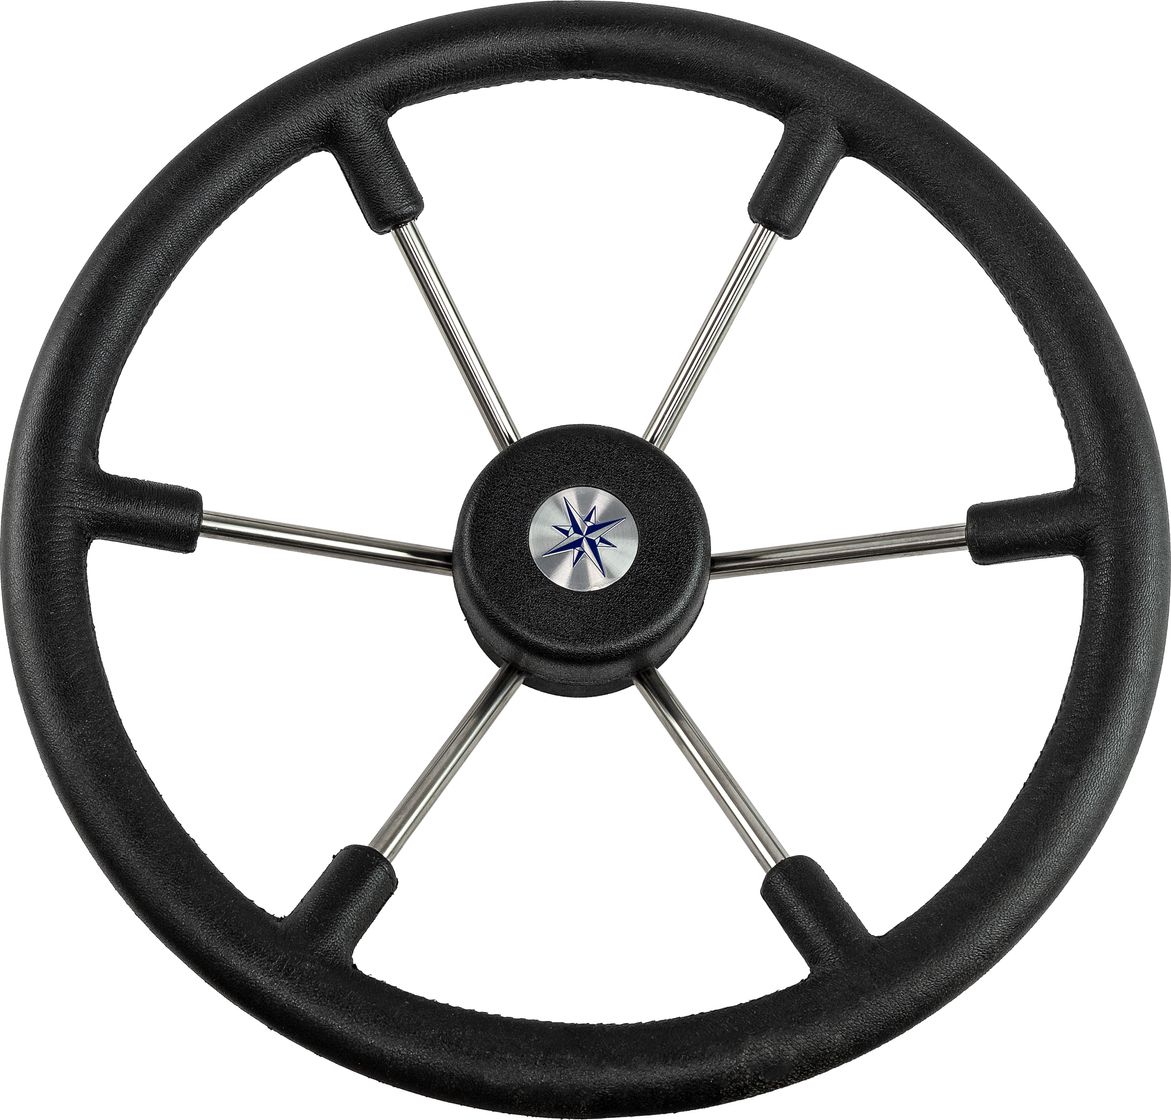 Рулевое колесо LEADER TANEGUM черный обод серебряные спицы д. 400 мм VN7400-01 рулевое колесо leader wood деревянный обод серебряные спицы д 360 мм vn7360 33